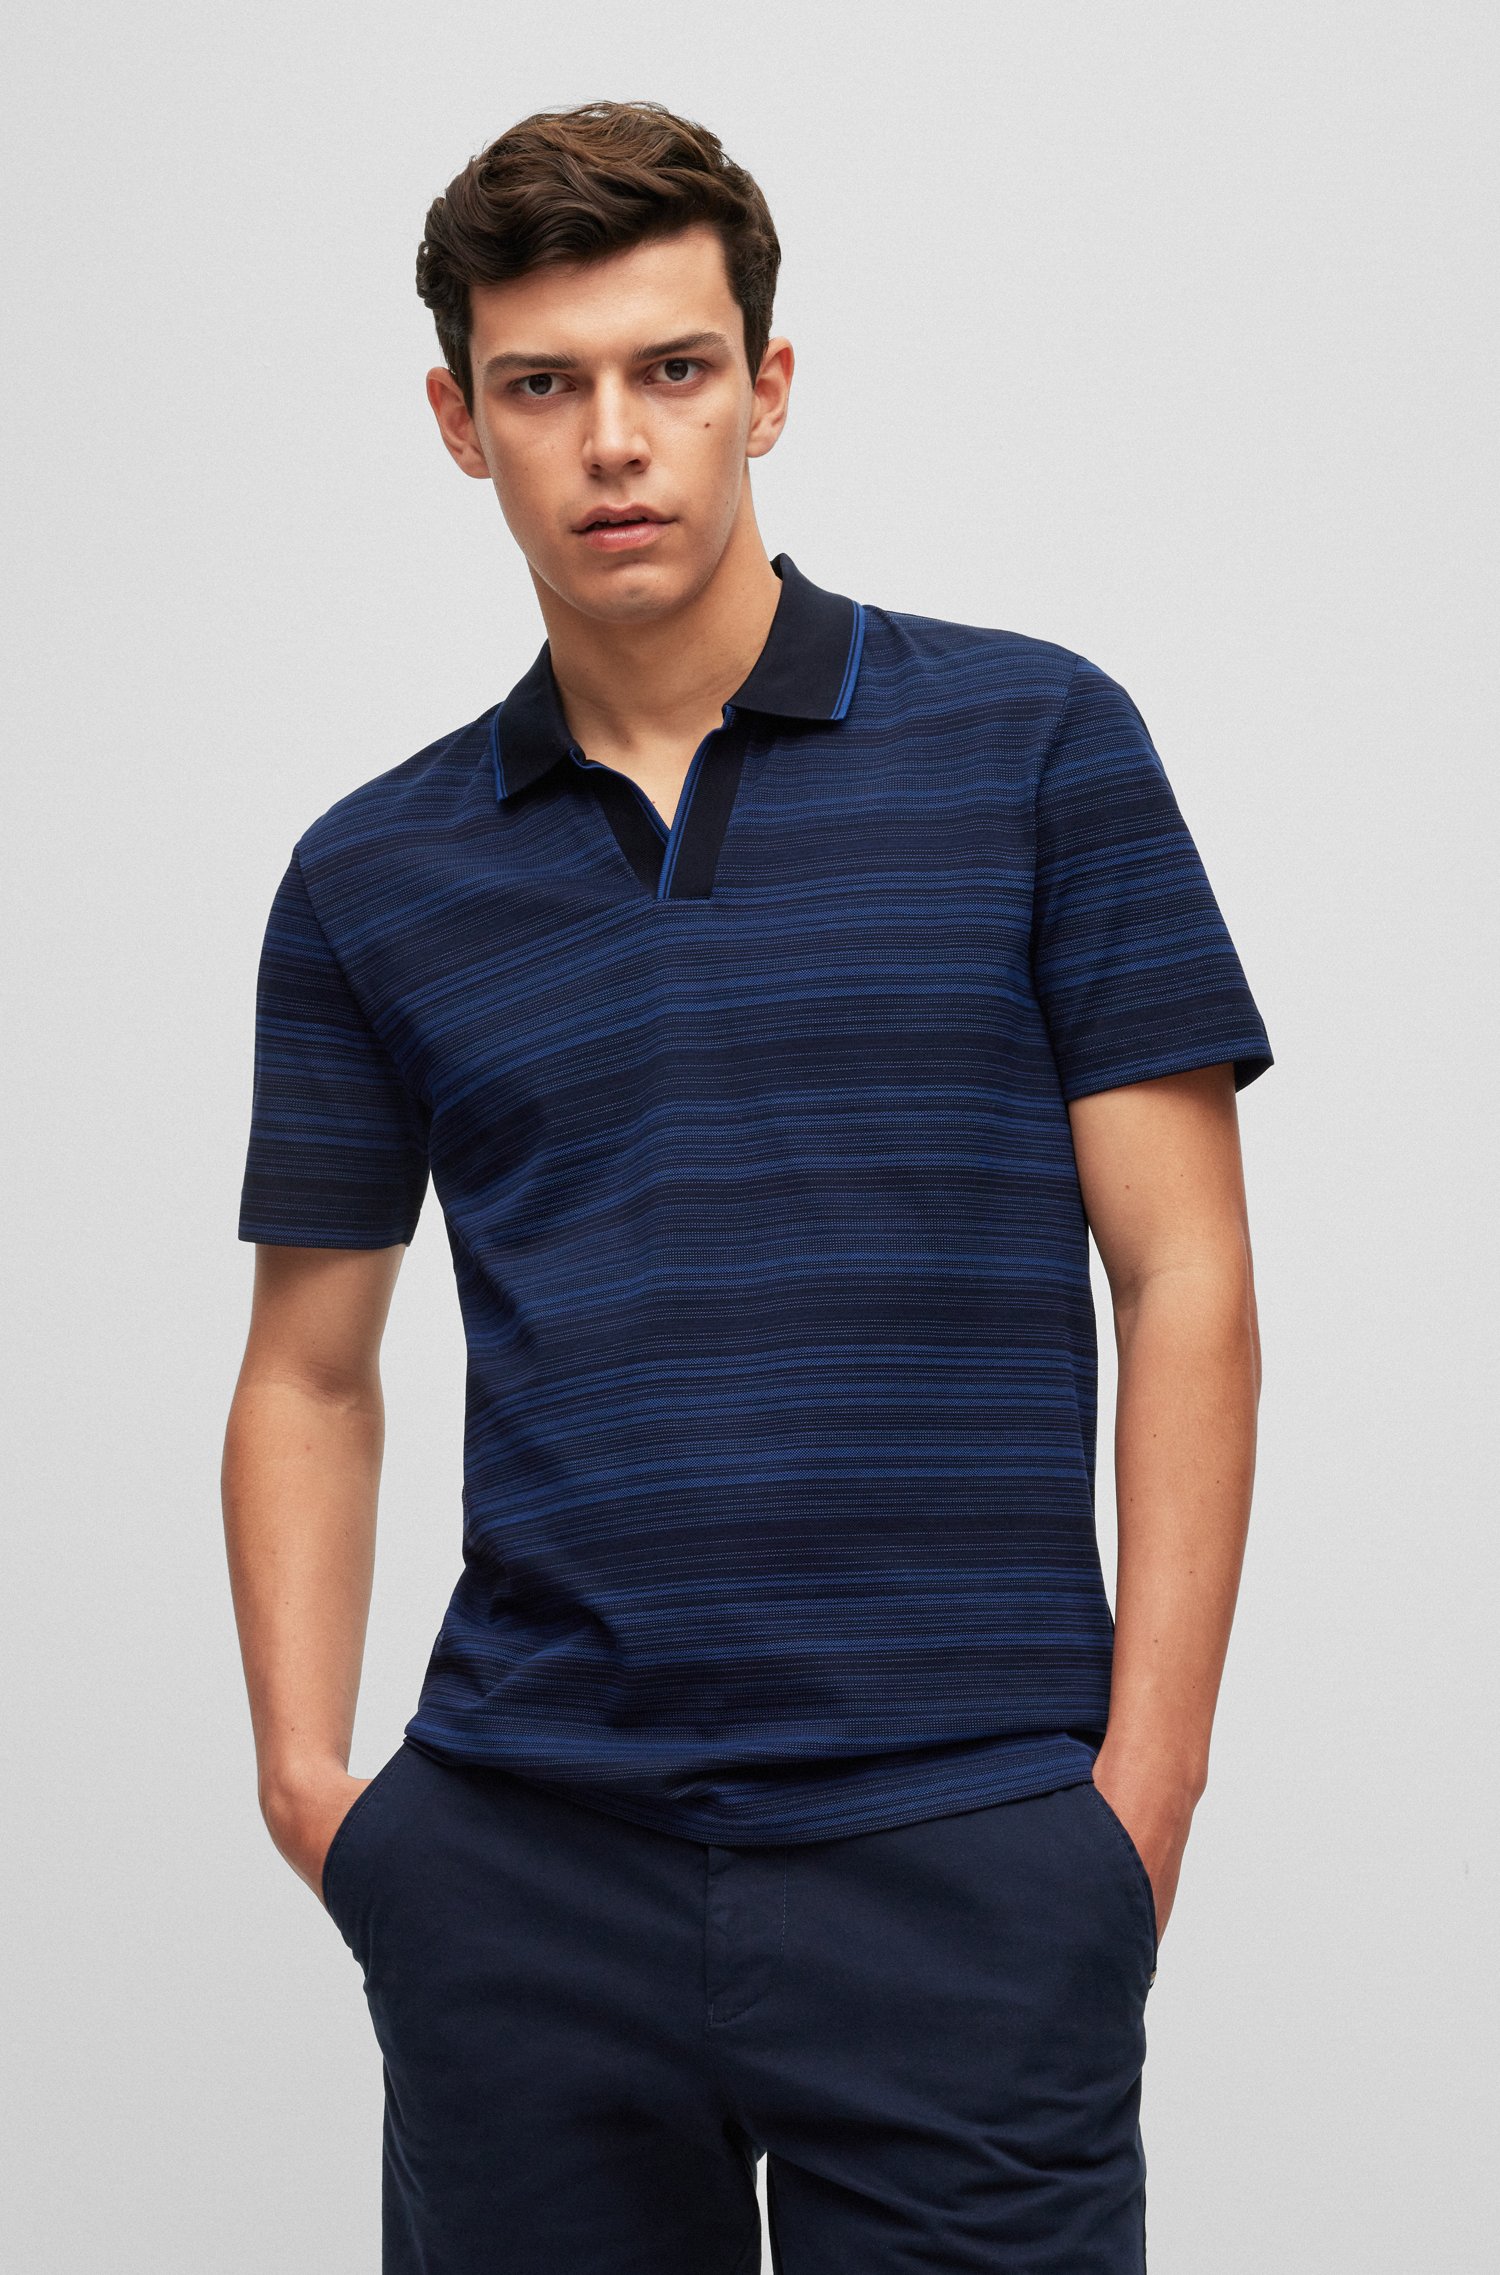 Multi-toned jacquard polo shirt mercerized cotton